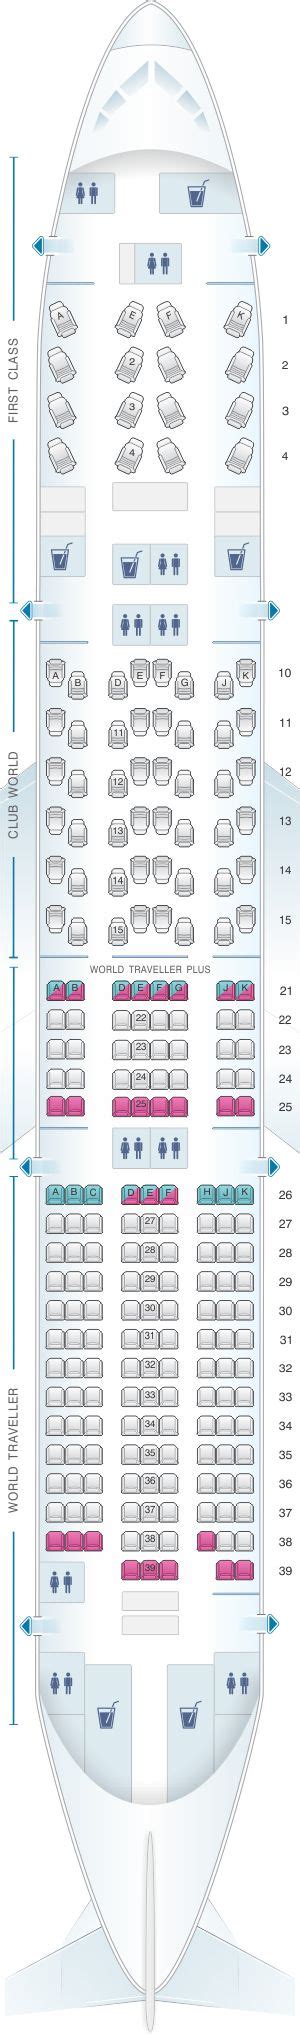 British Airways 777 Seating Chart